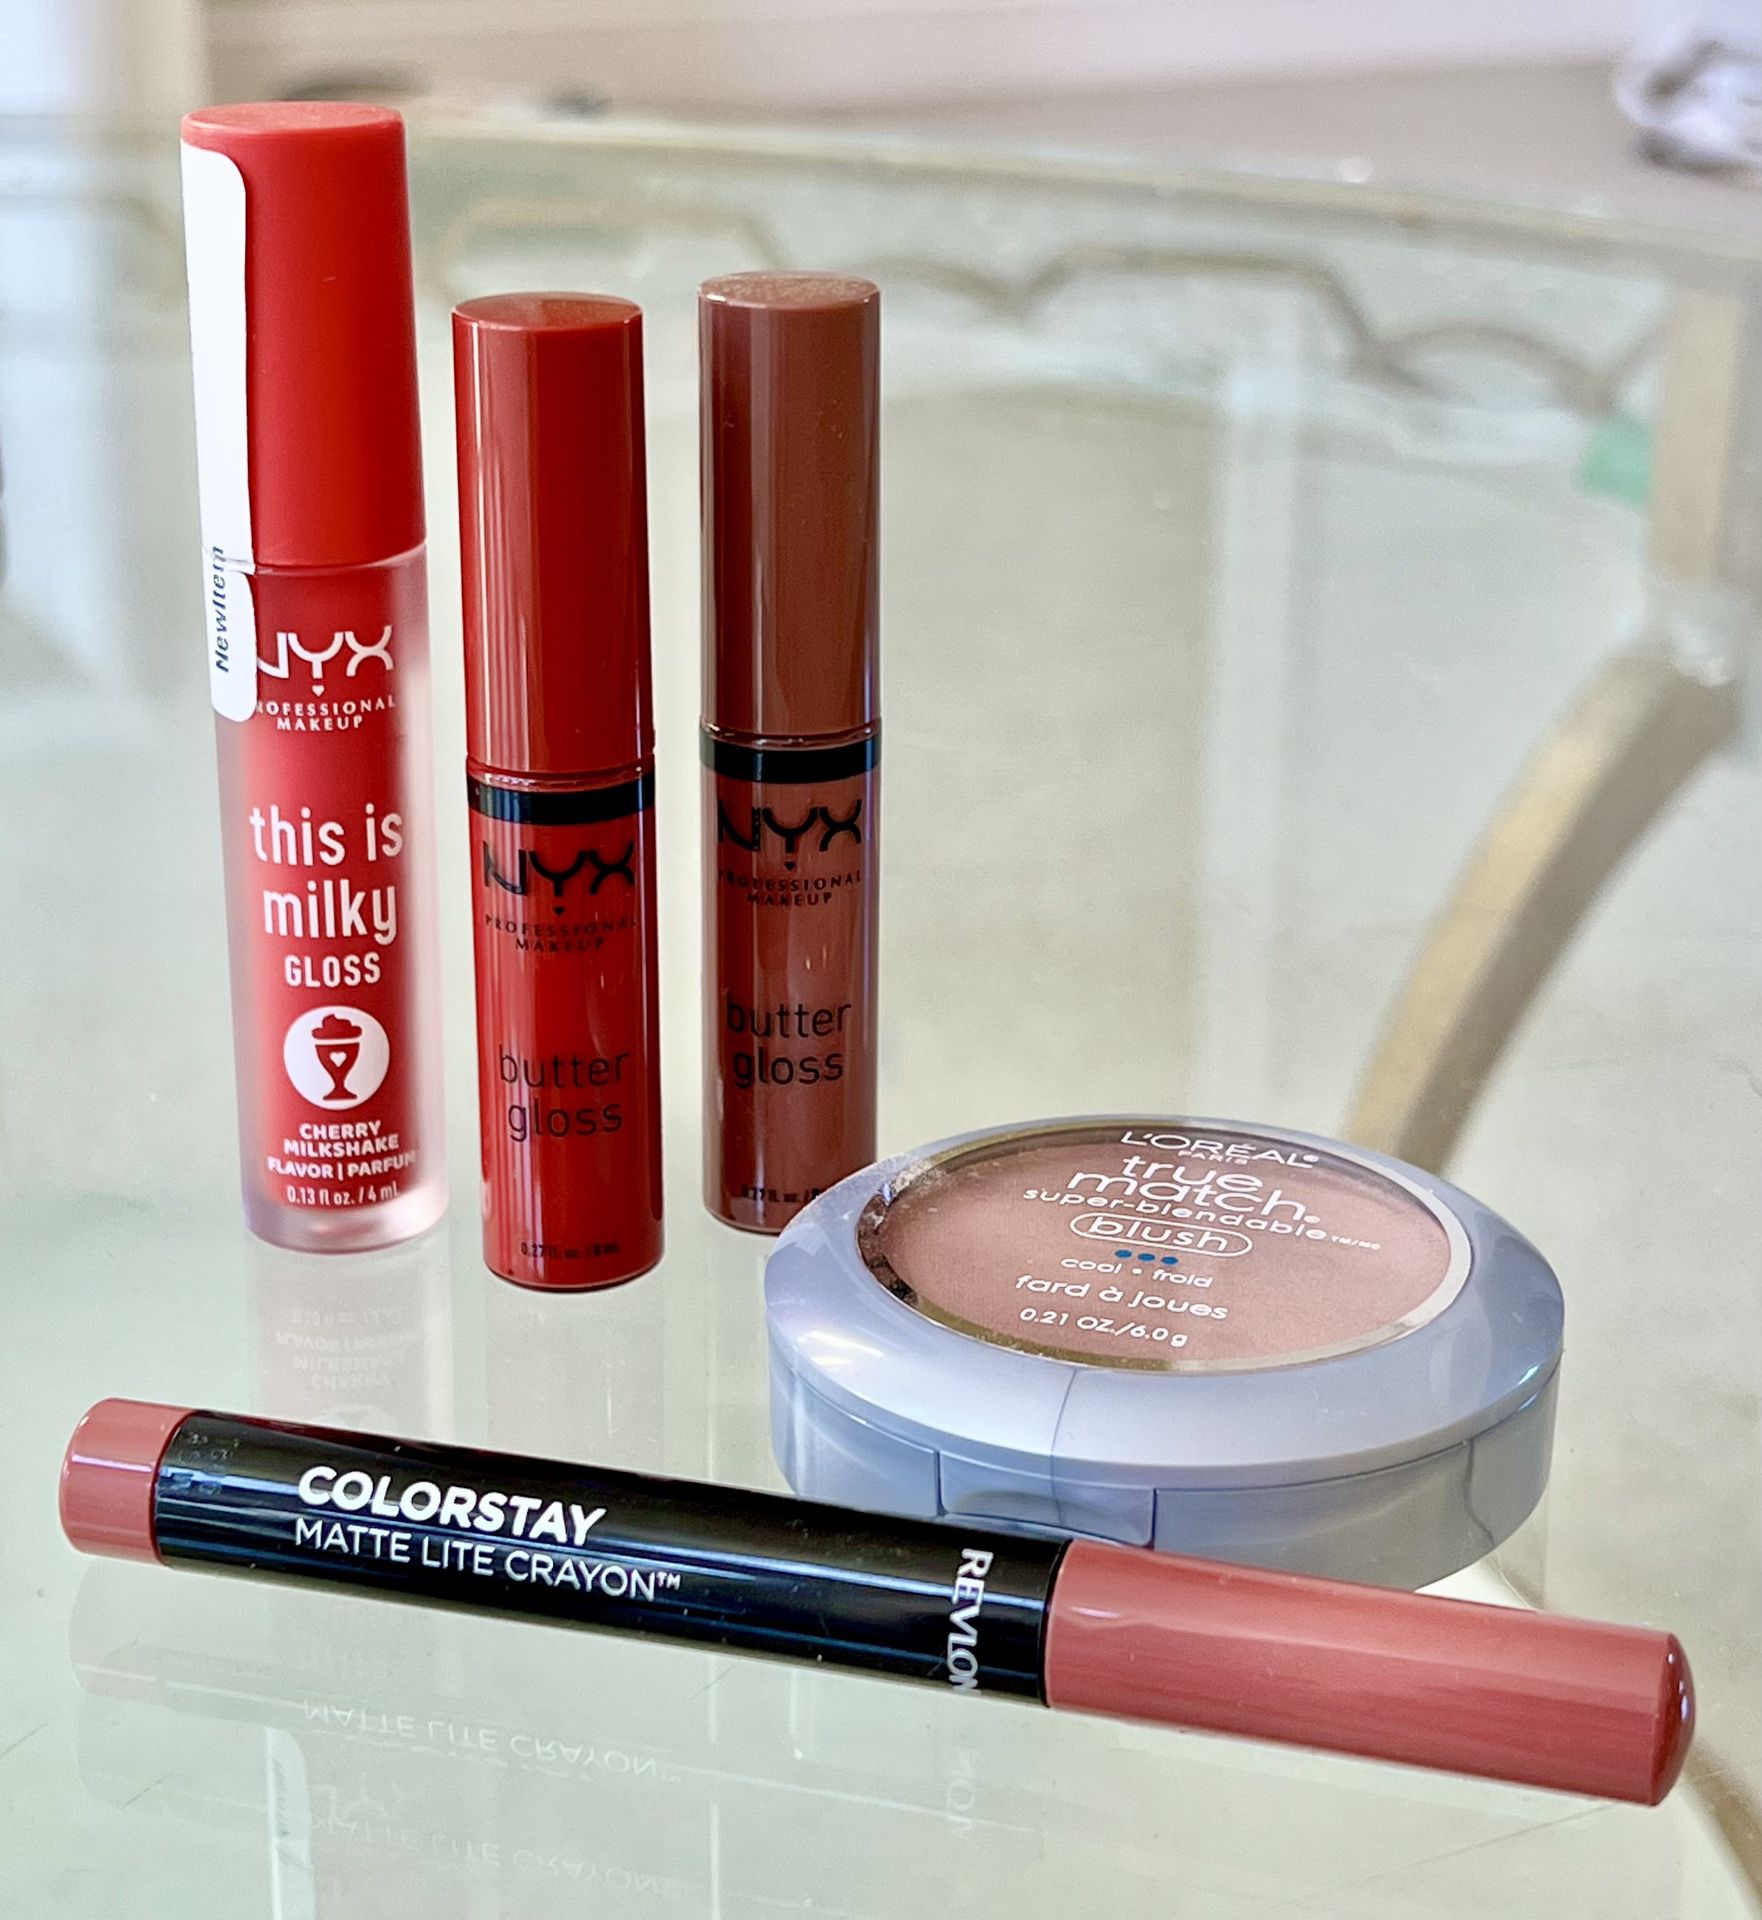 Makeup Bundle: NYX Cosmetics, REVLON, Loréal Paris… NEW! 50% OFF MSRP!